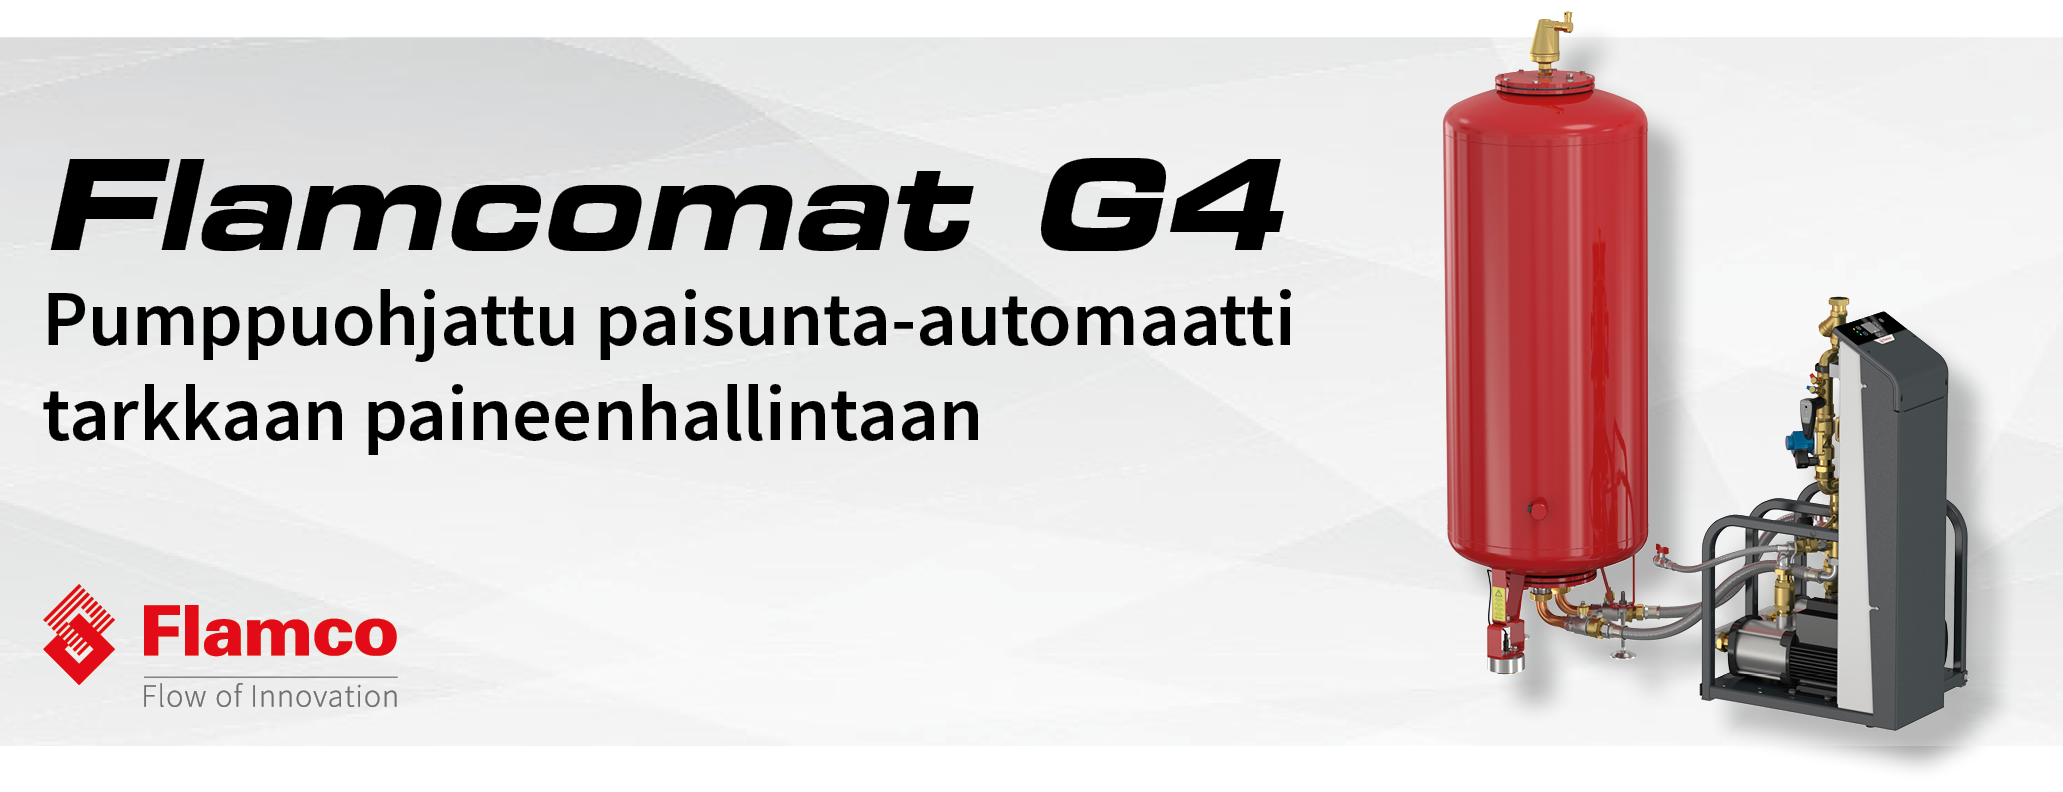 Flamcomat G4 Pumppuohjattu paisunta-automaatti tekee paineenhallinnasta helppoa